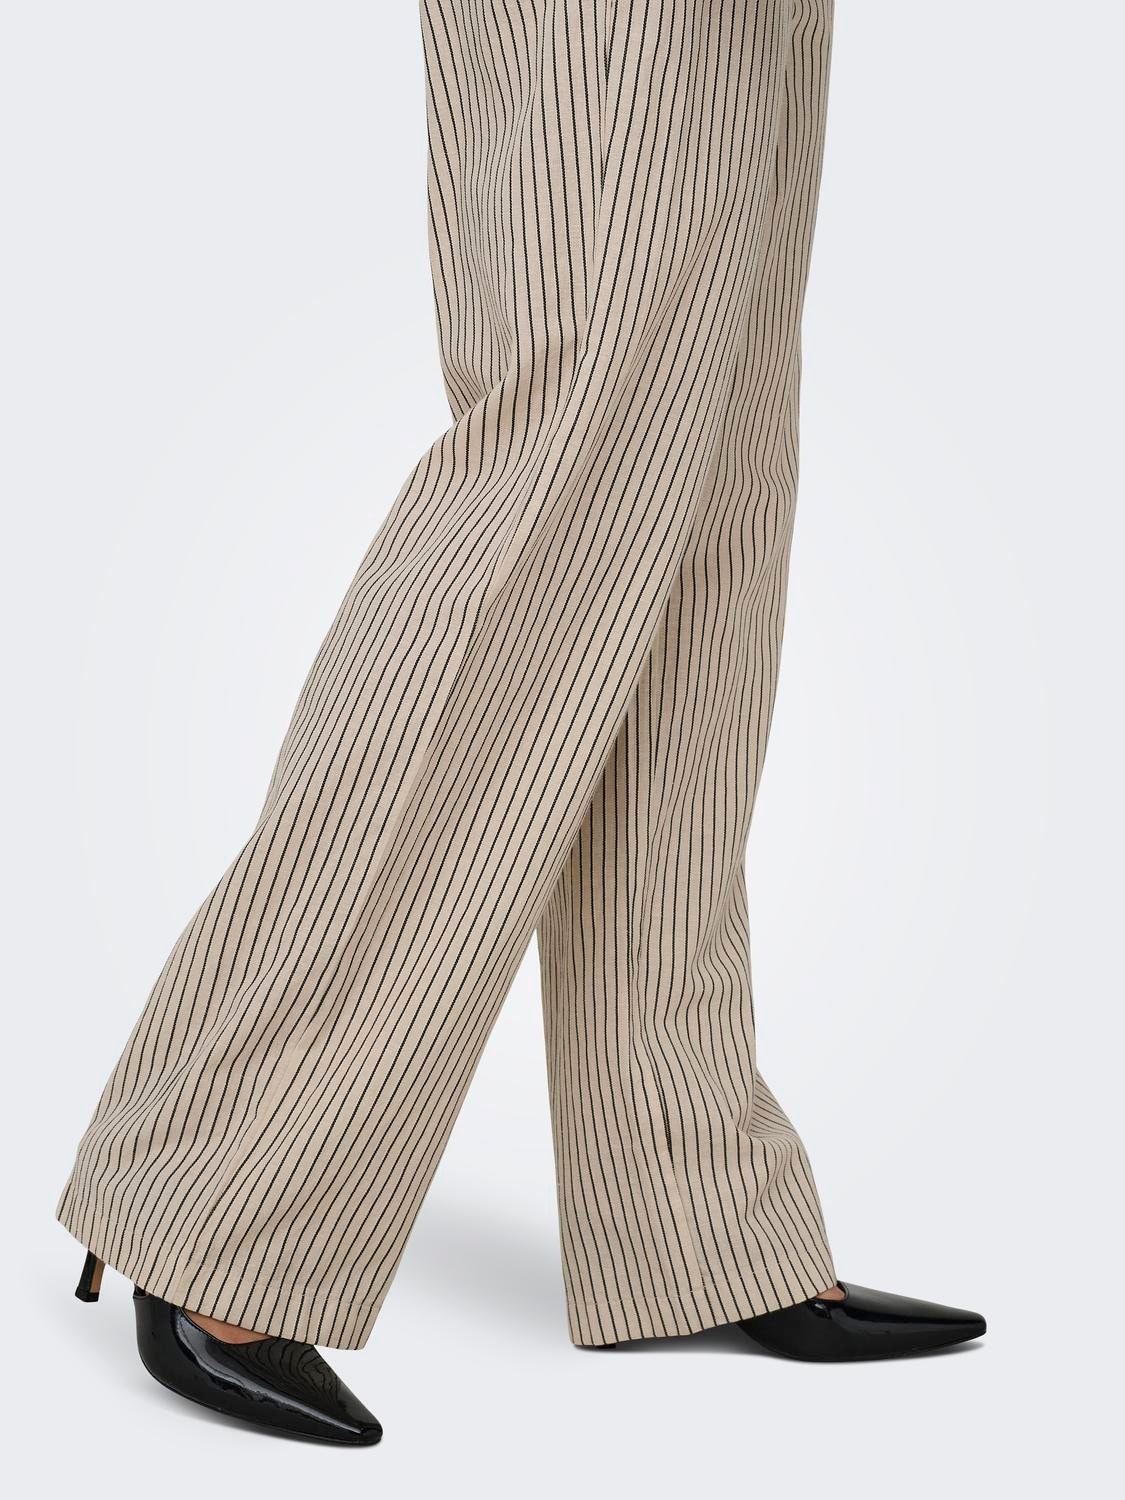 ONLY Stribede bukser med bindebånd -Pumice Stone - 15322786